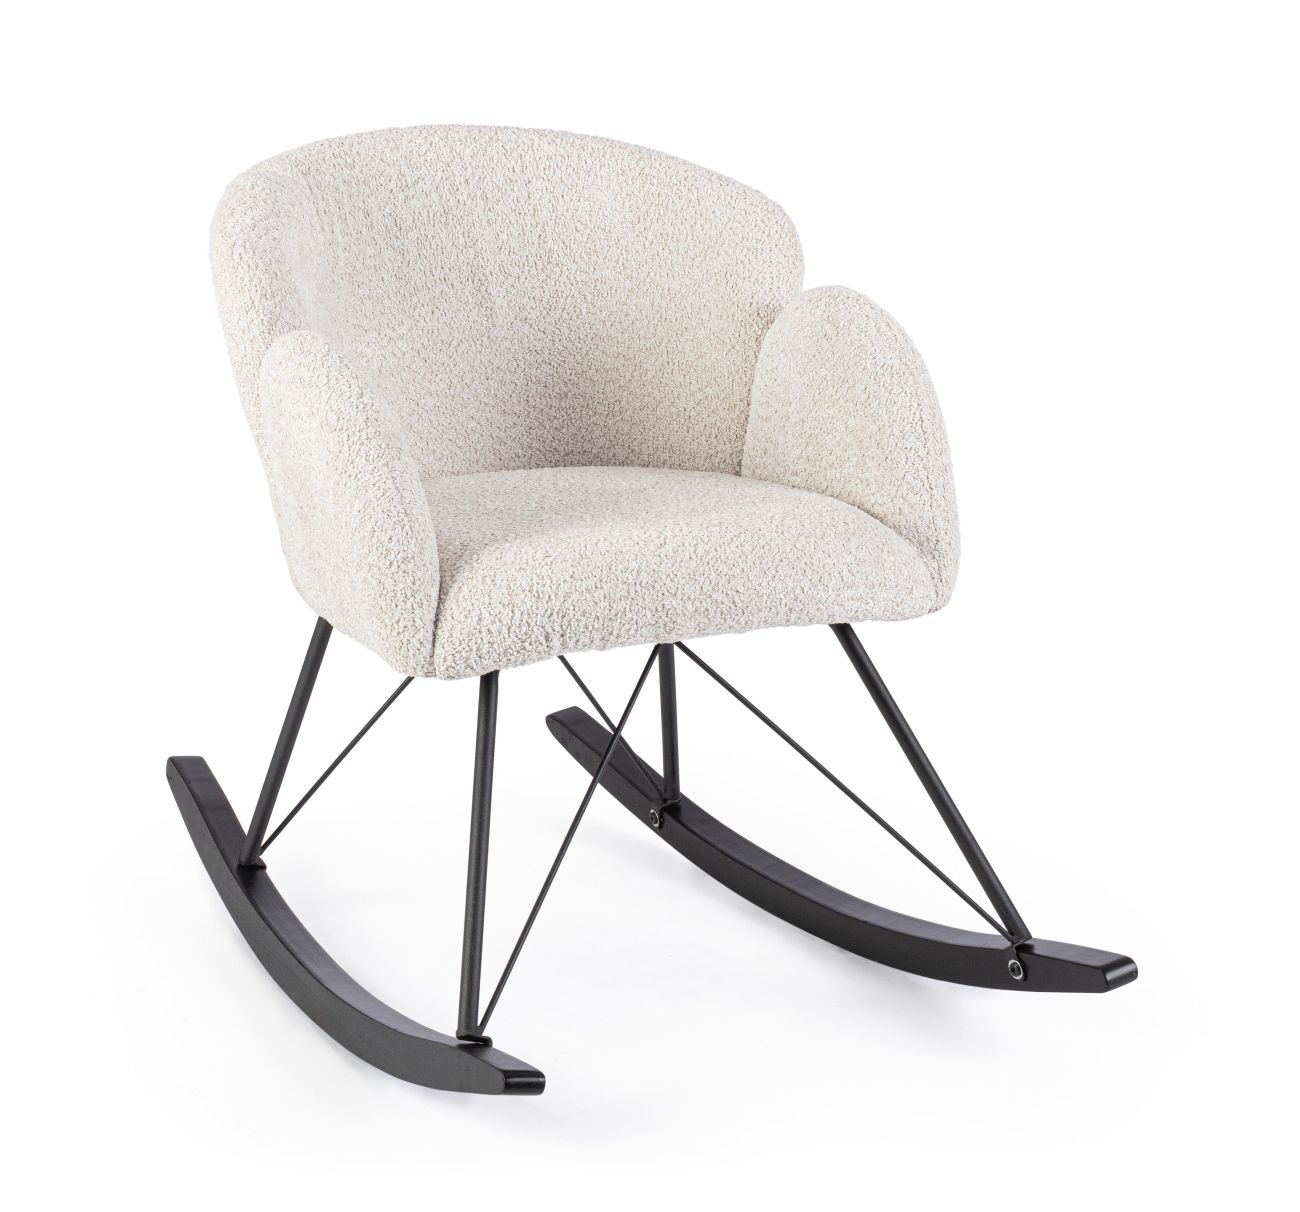 Der Schaukelsessel Sibilla überzeugt mit seinem modernen Stil. Gefertigt wurde er aus Stoff, welcher einen natürlichen Farbton besitzt. Das Gestell ist aus Metall und hat eine schwarze Farbe. Der Sessel besitzt eine Sitzhöhe von 48 cm.